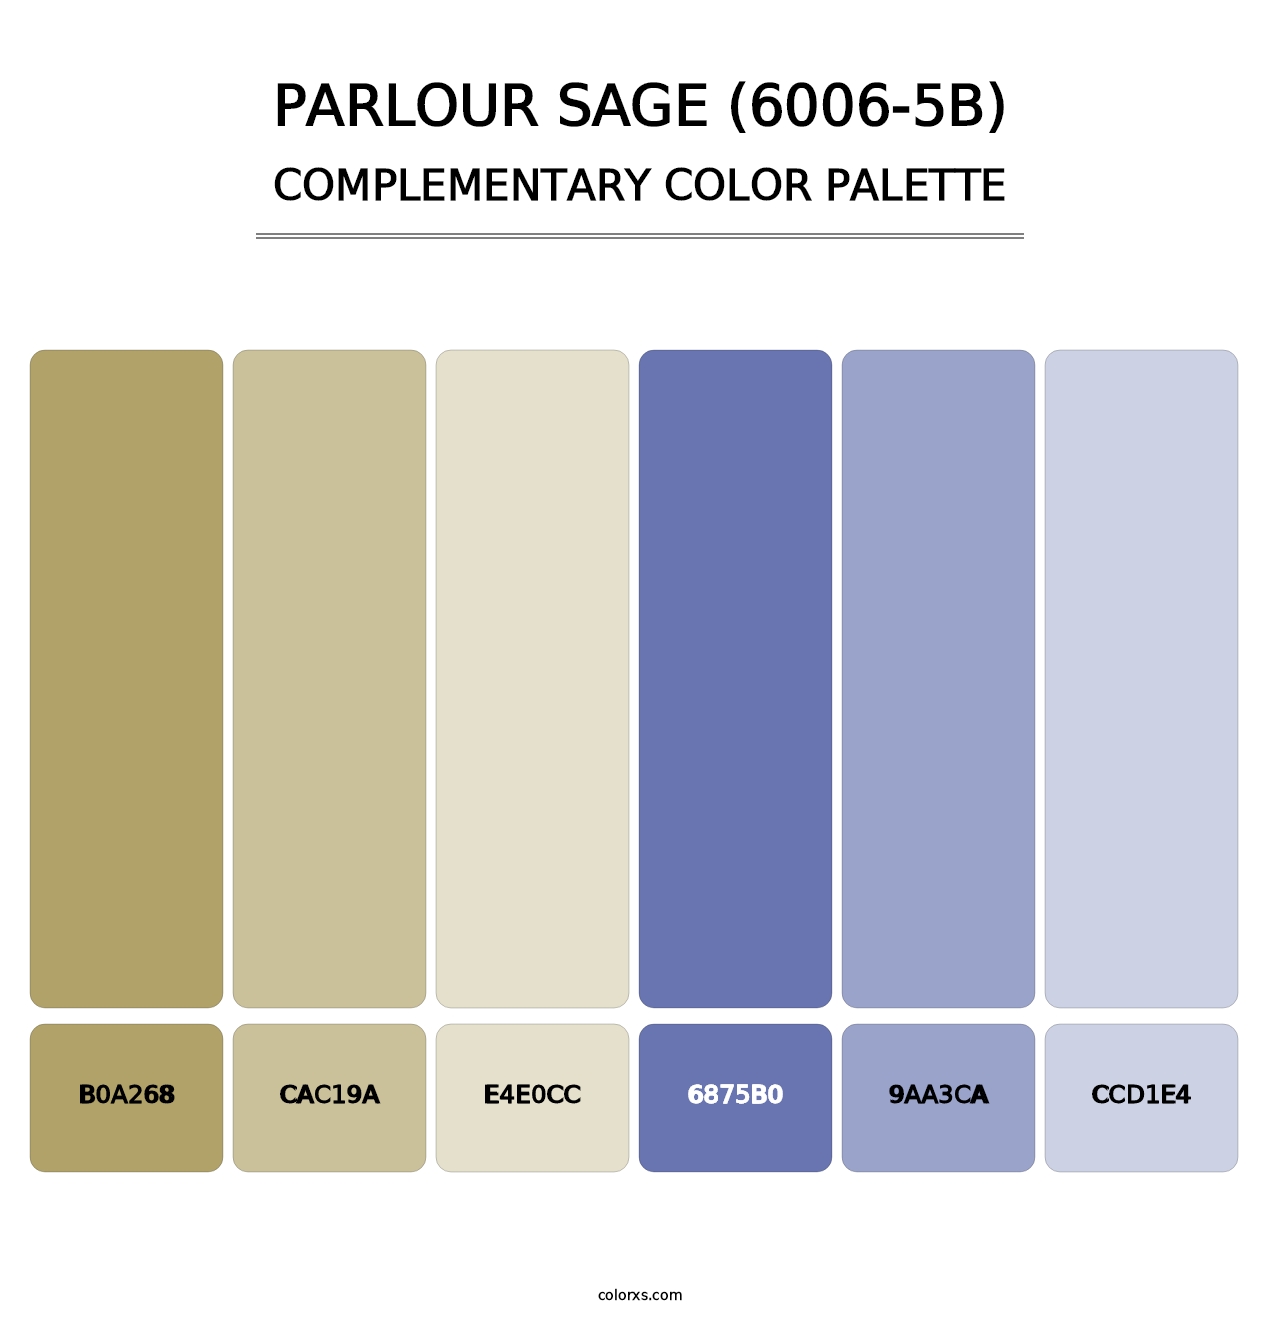 Parlour Sage (6006-5B) - Complementary Color Palette